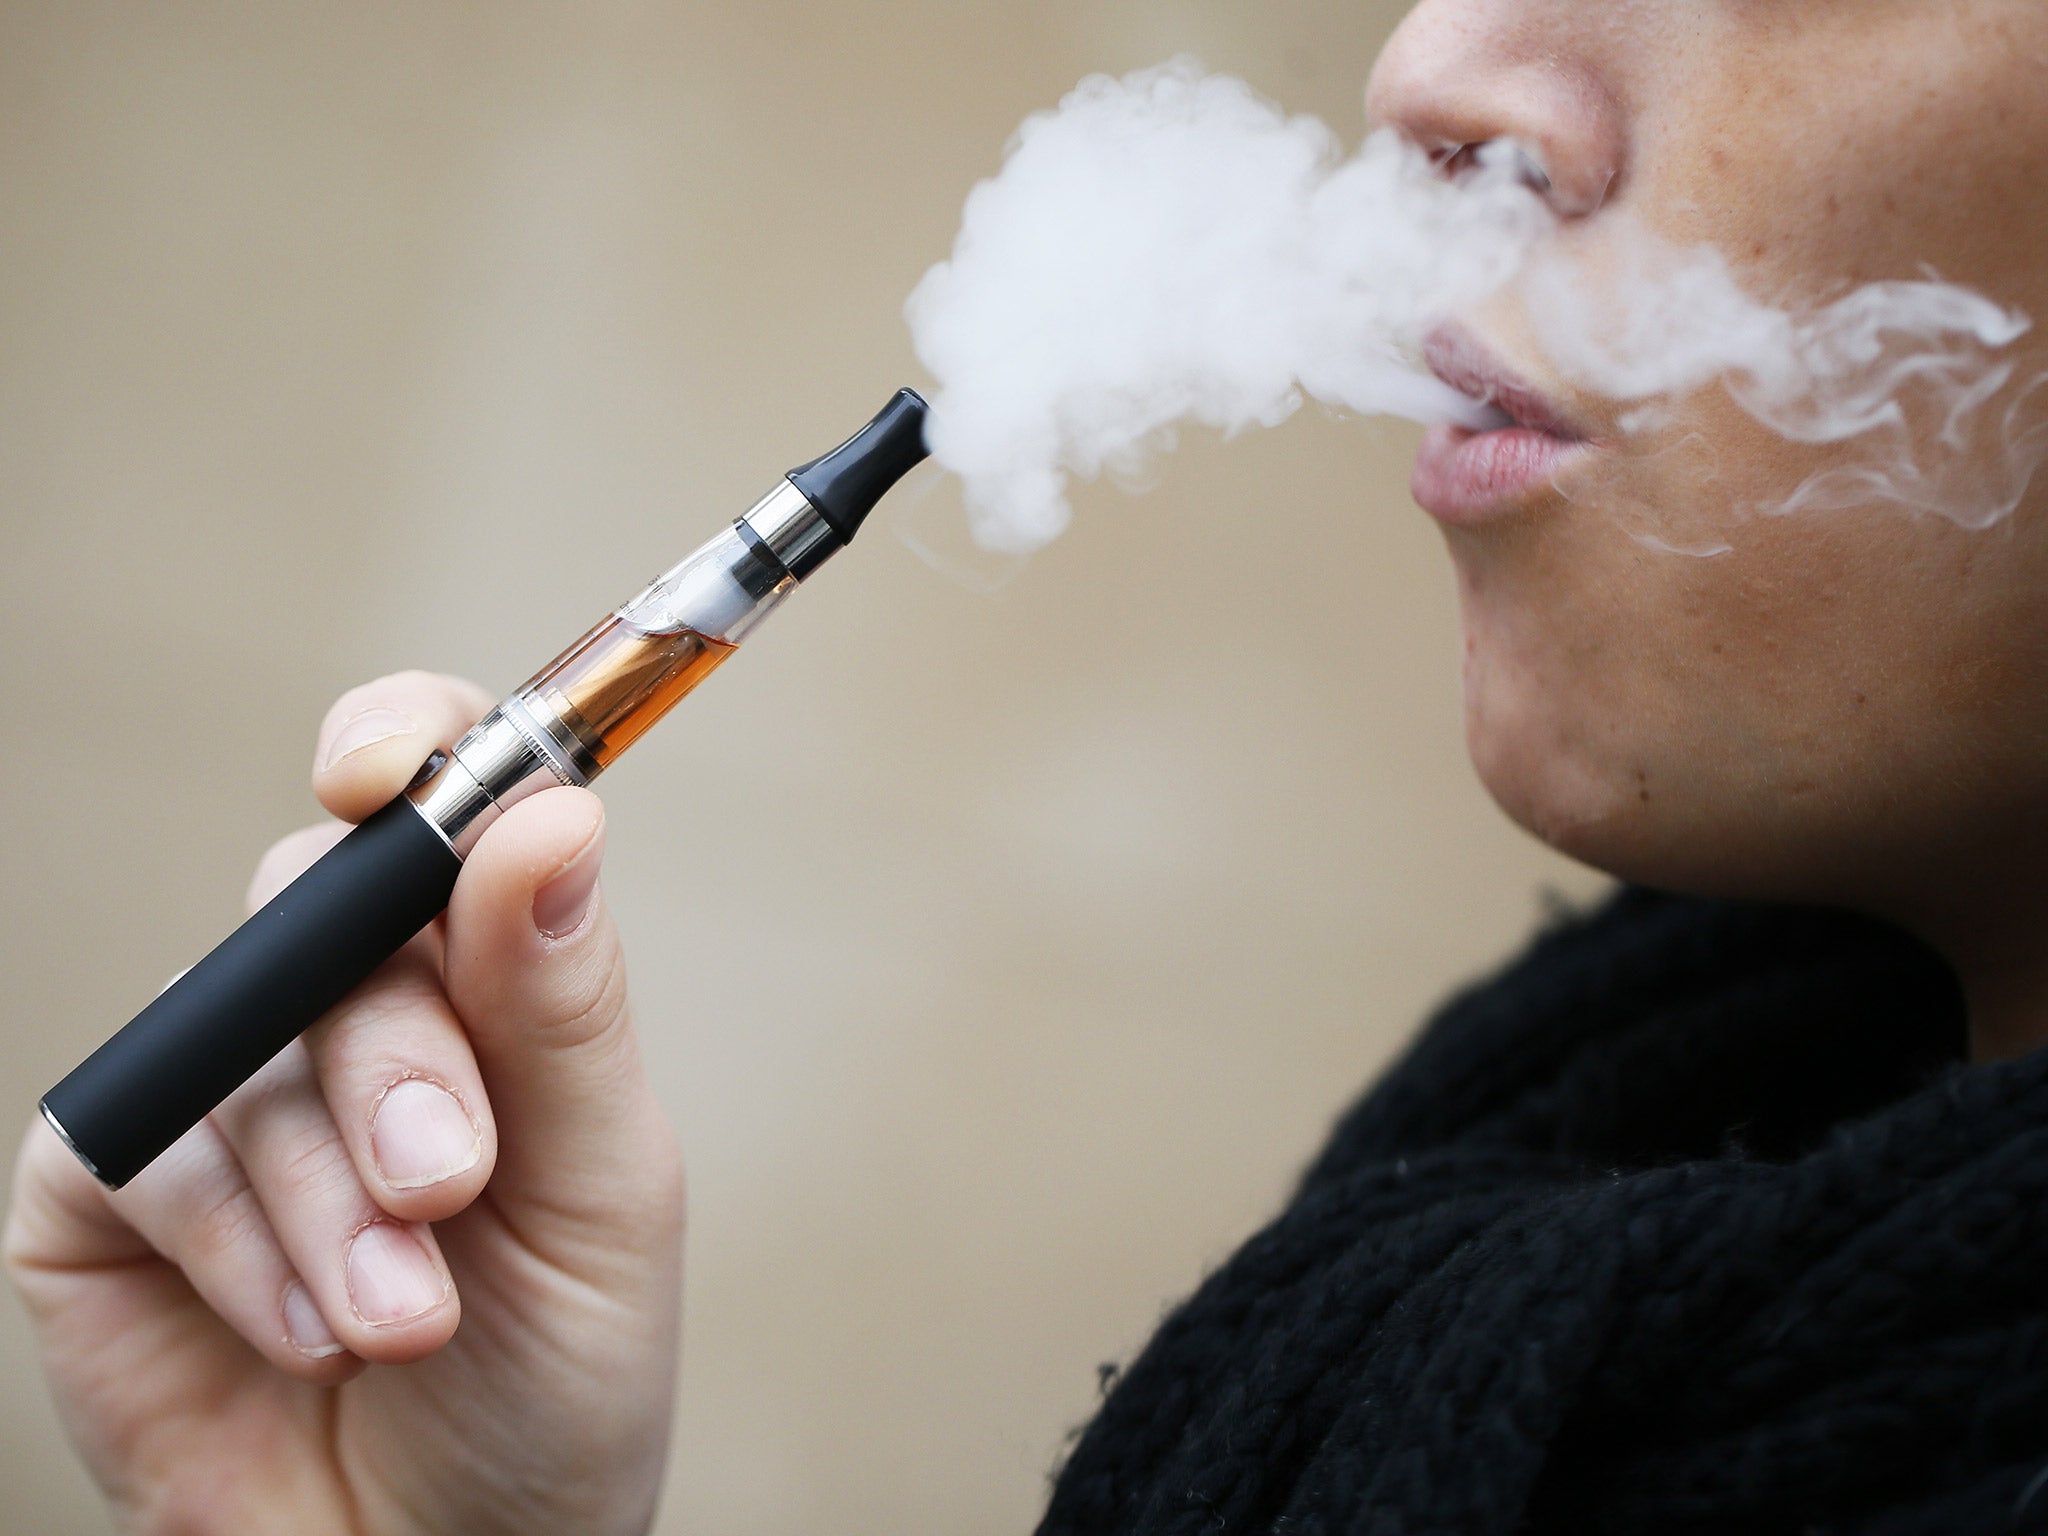 The e-cigarette market is rapidly expanding